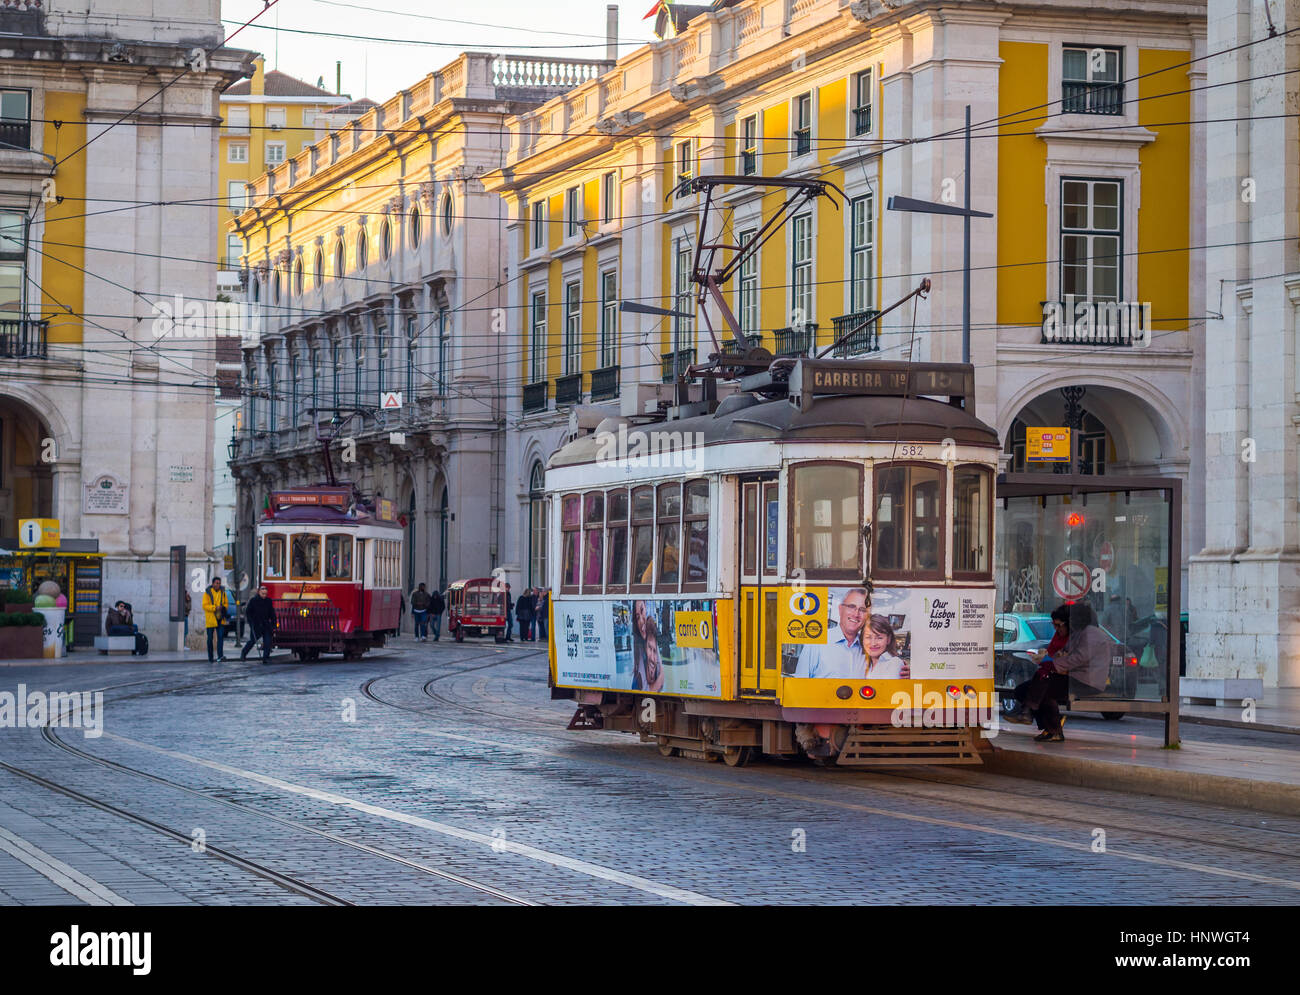 Lisboa, Portugal - 10 de enero de 2017: viejos tranvías en la Praca do Comercio (Commerce Square) en Lisboa, Portugal. Foto de stock